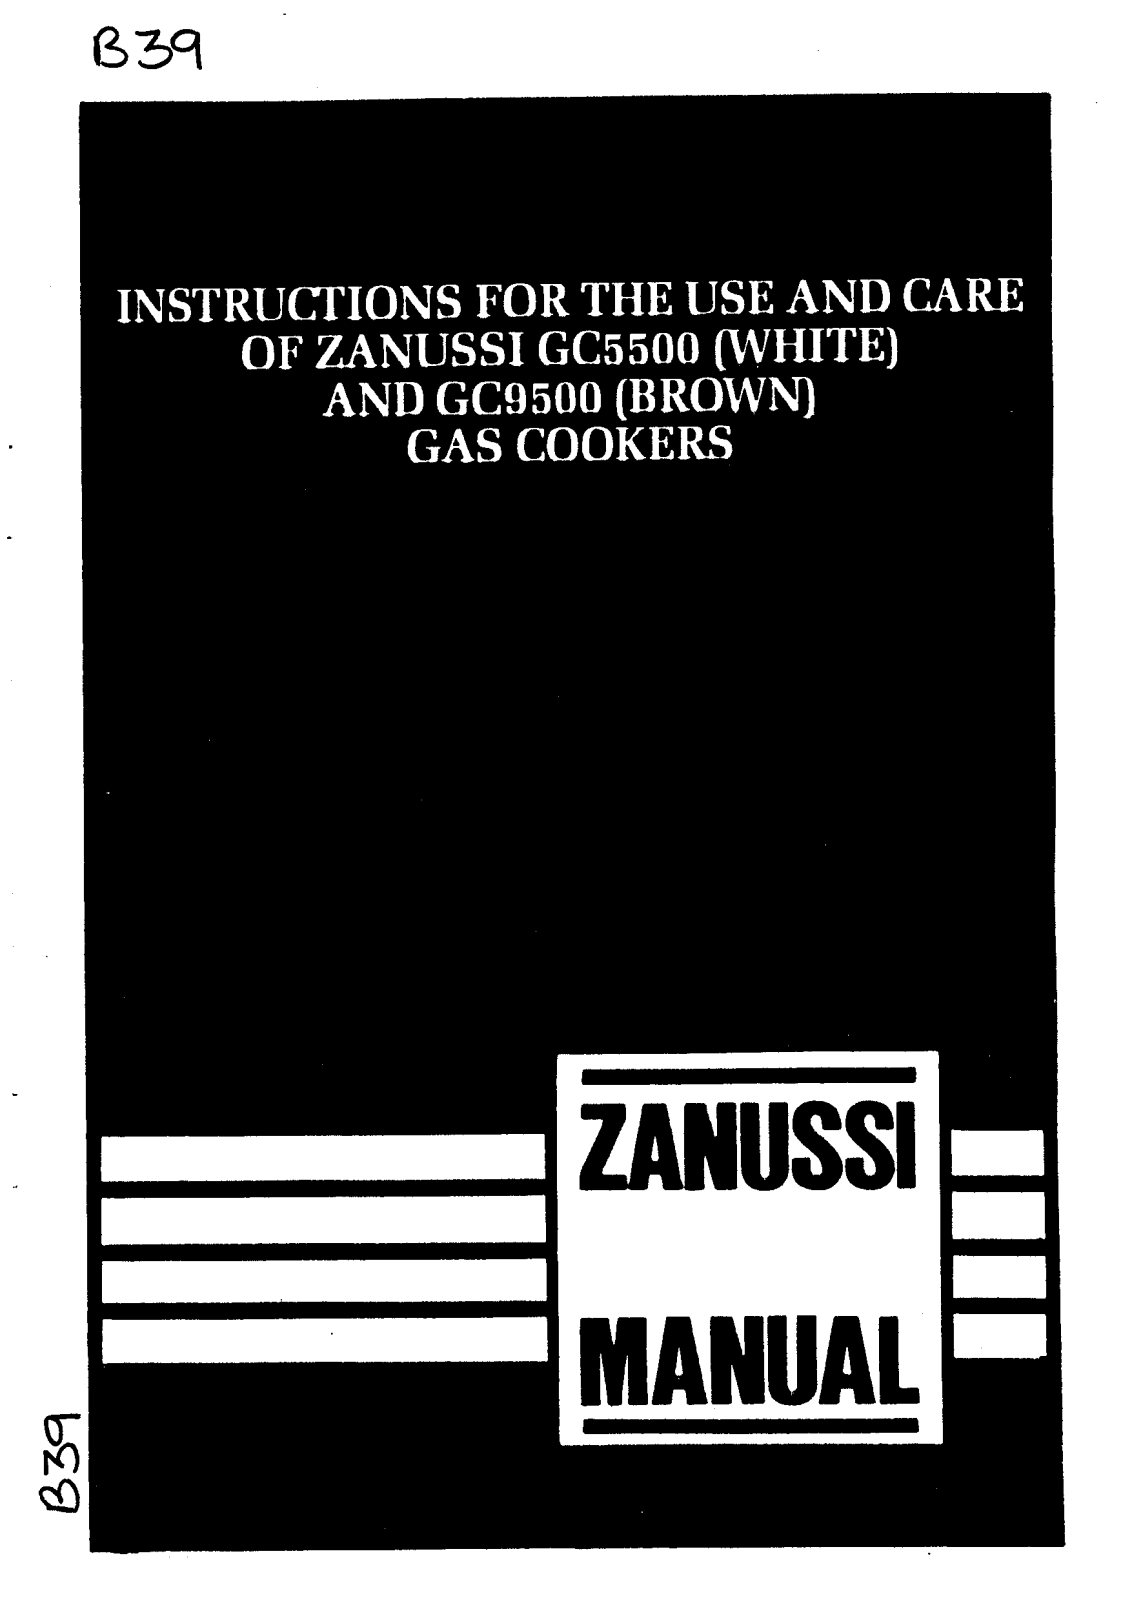 Zanussi GC5500 User Manual